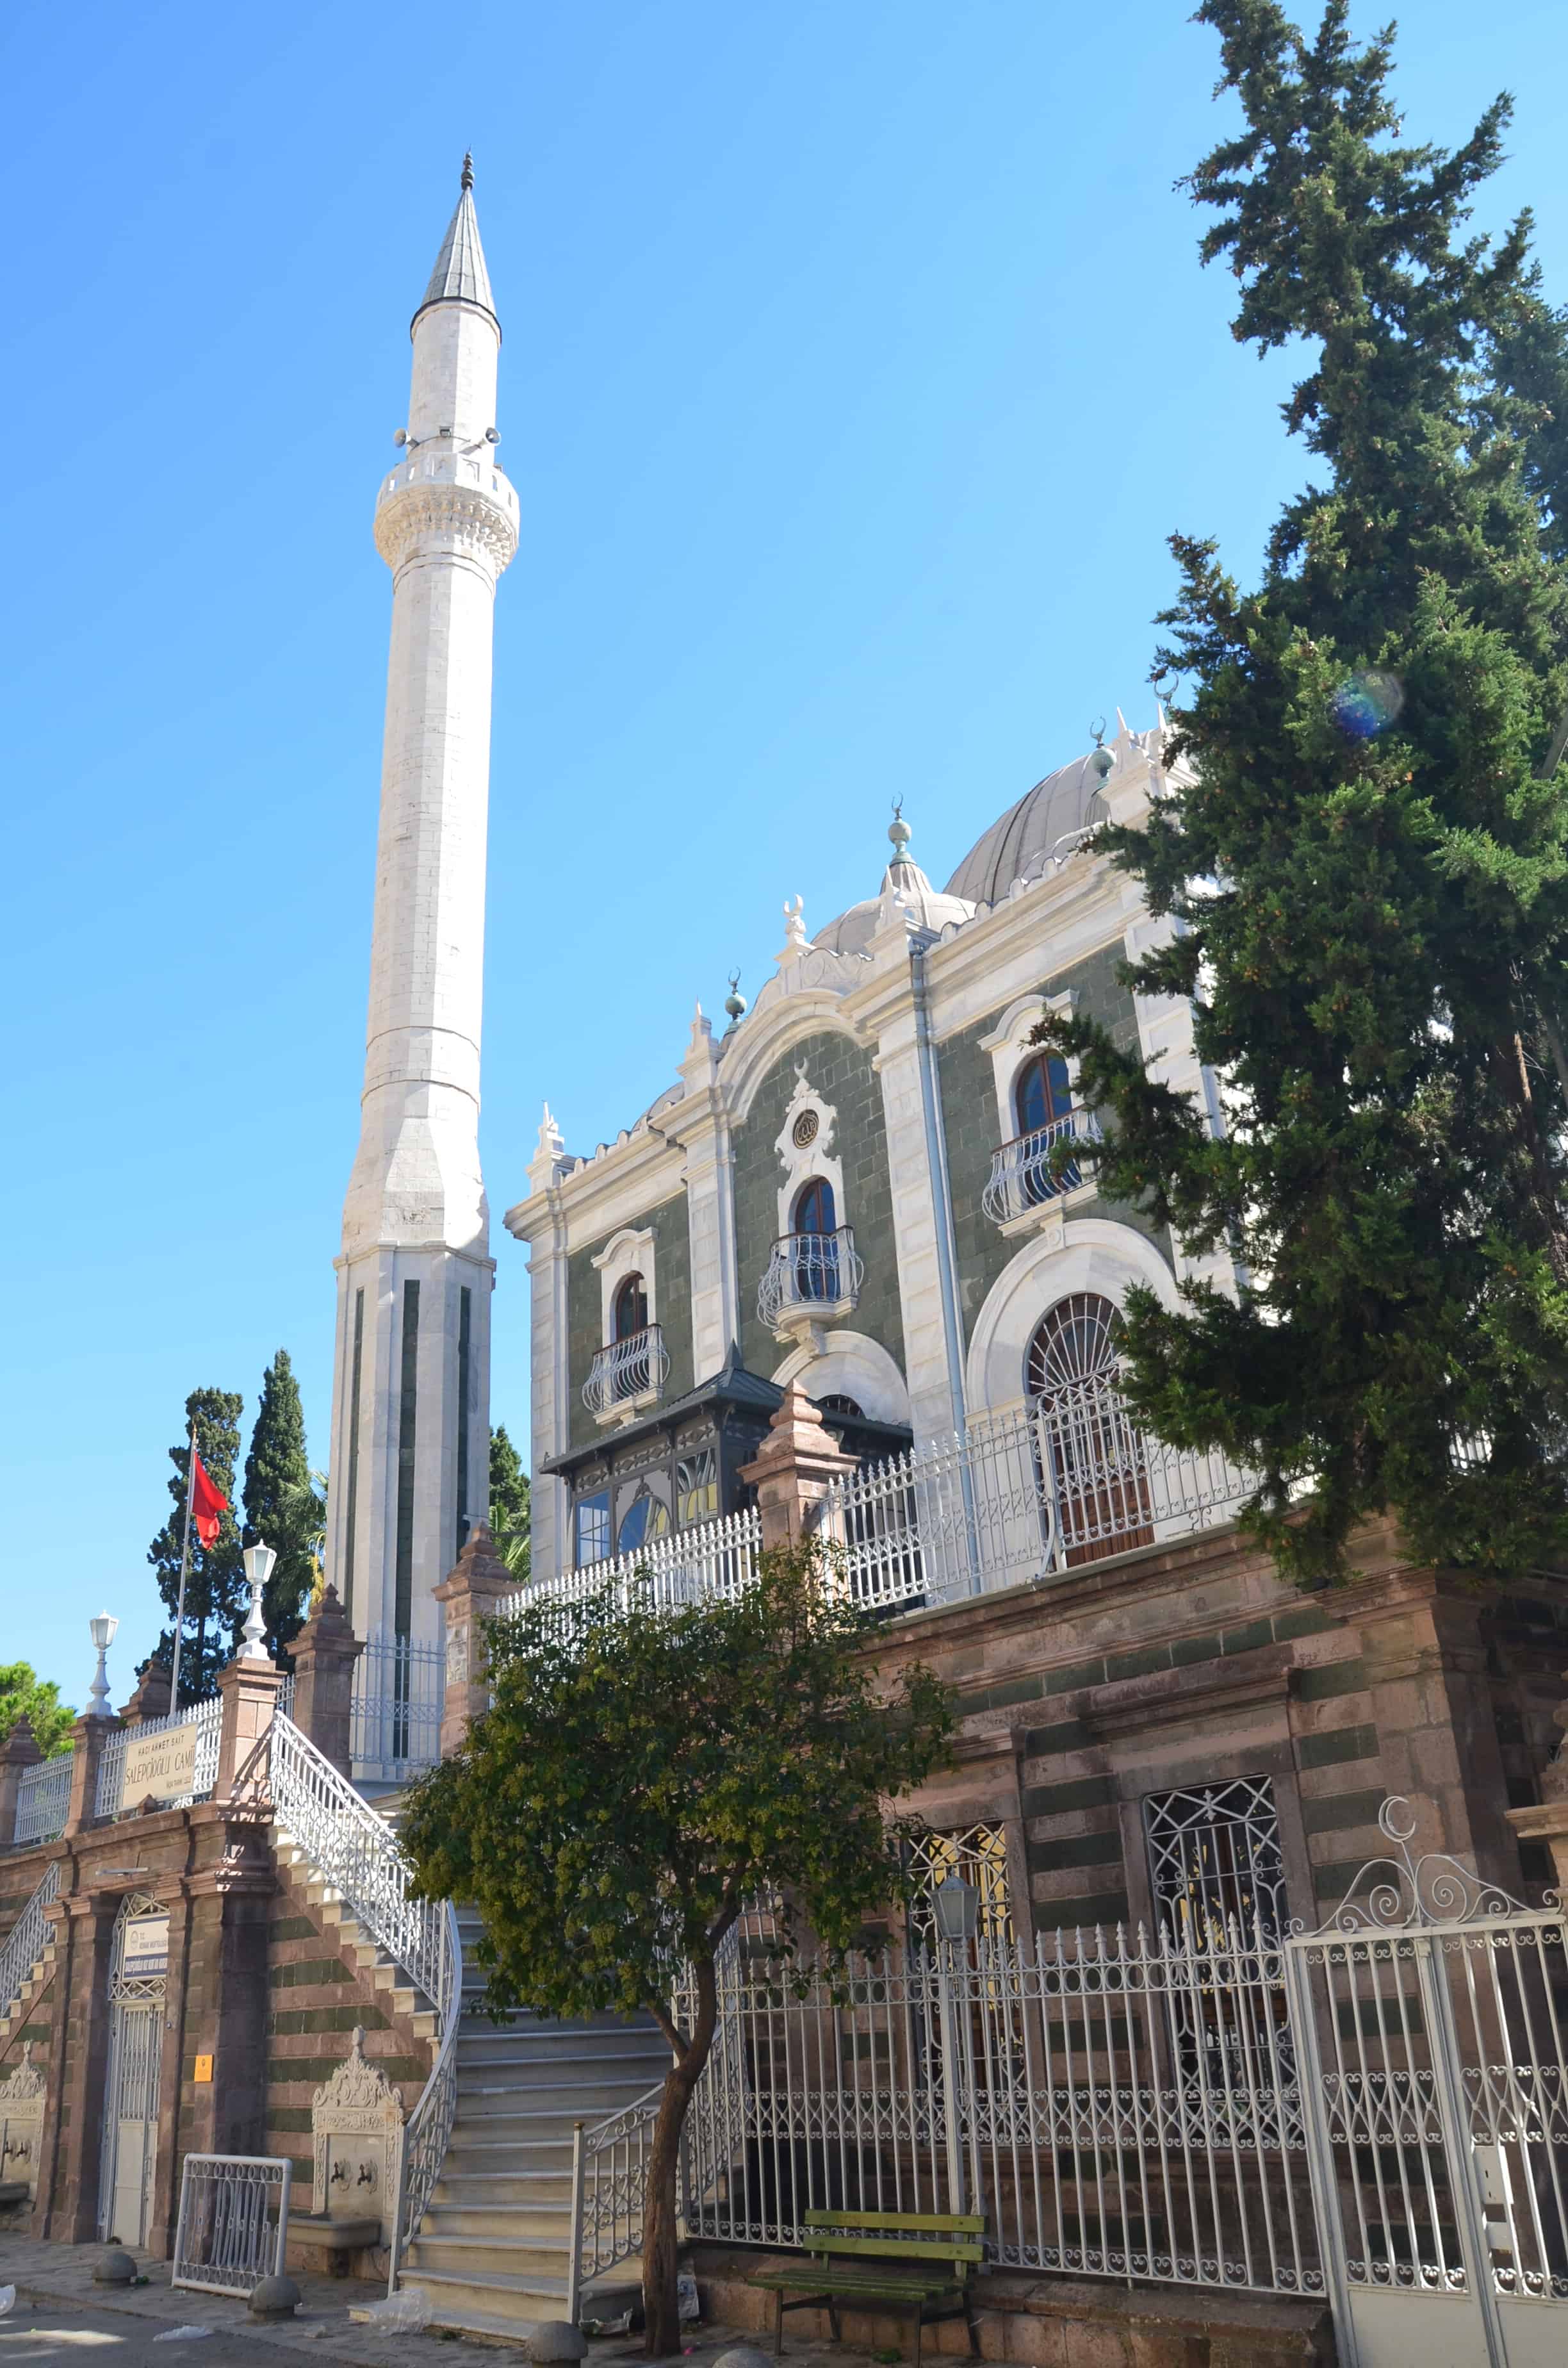 Salepçioğlu Camii in Izmir, Turkey